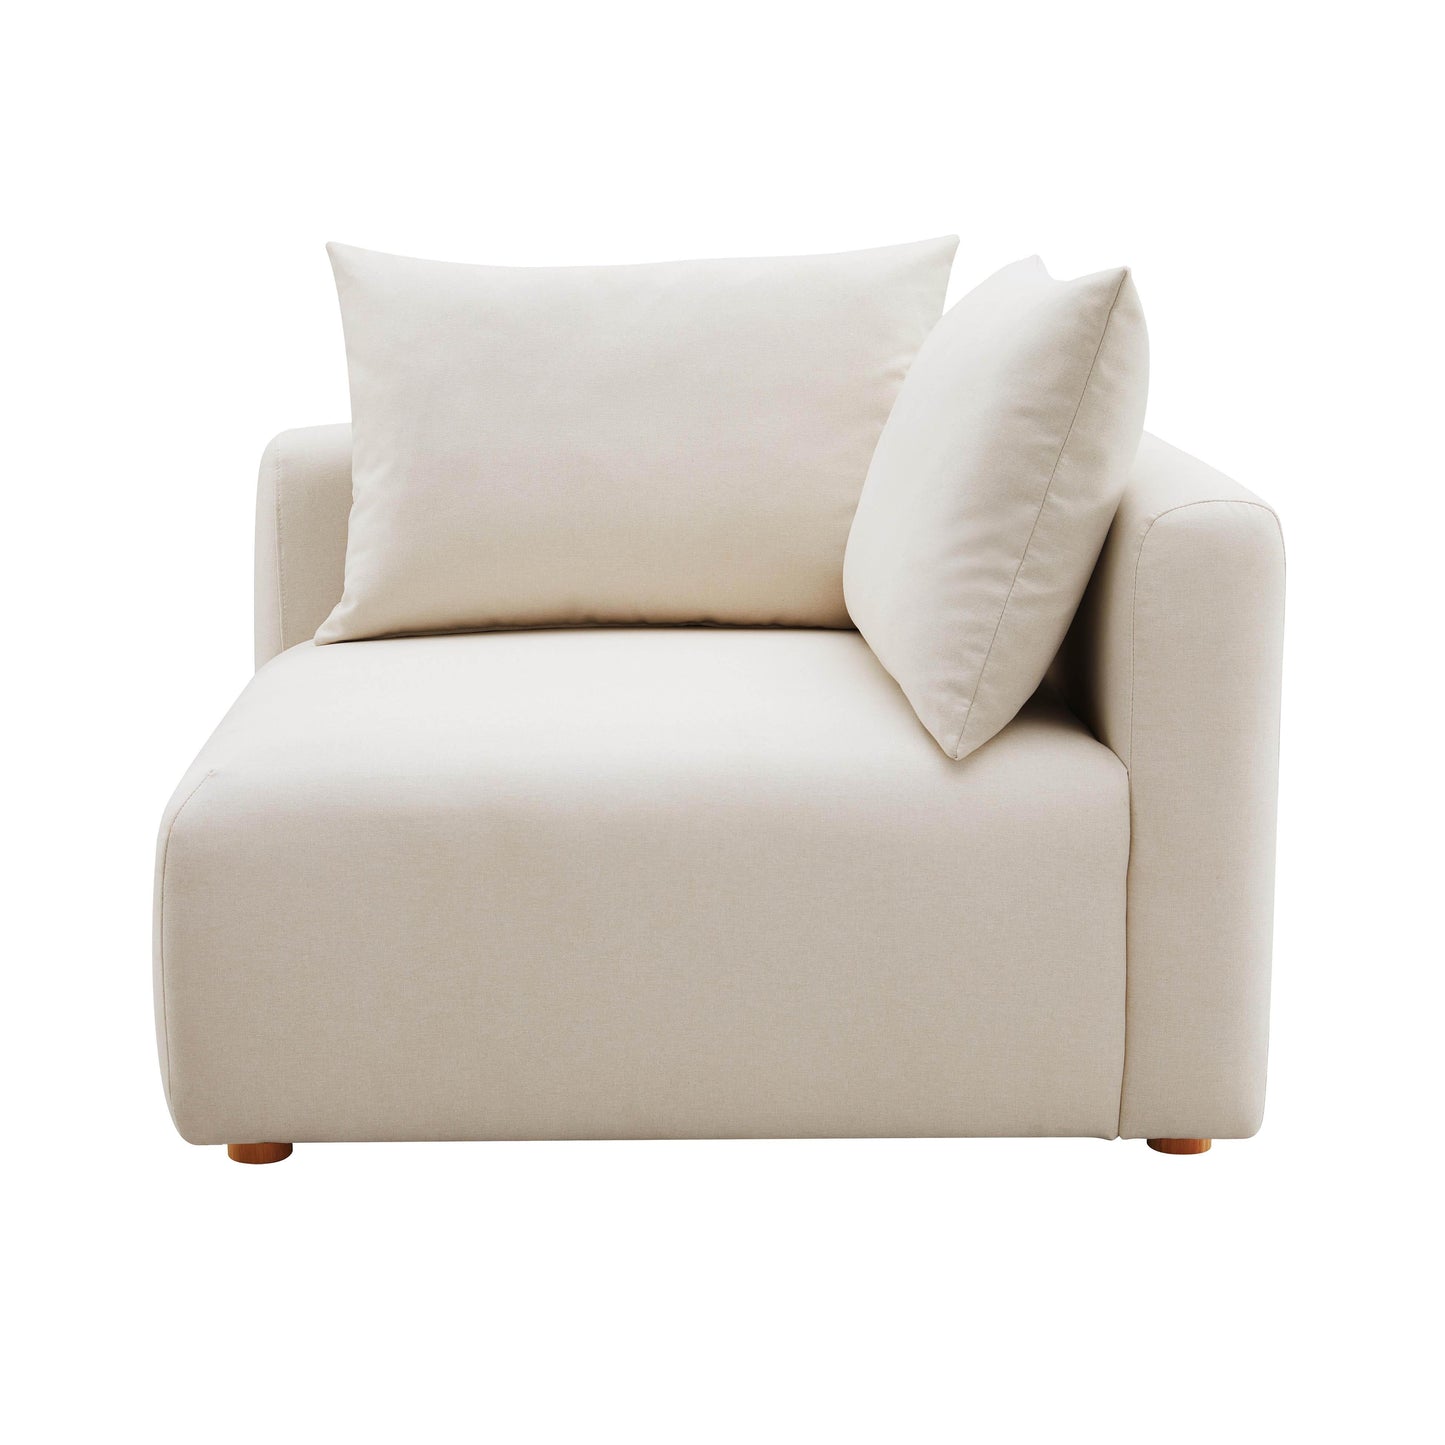 julianna cream linen modular corner chair